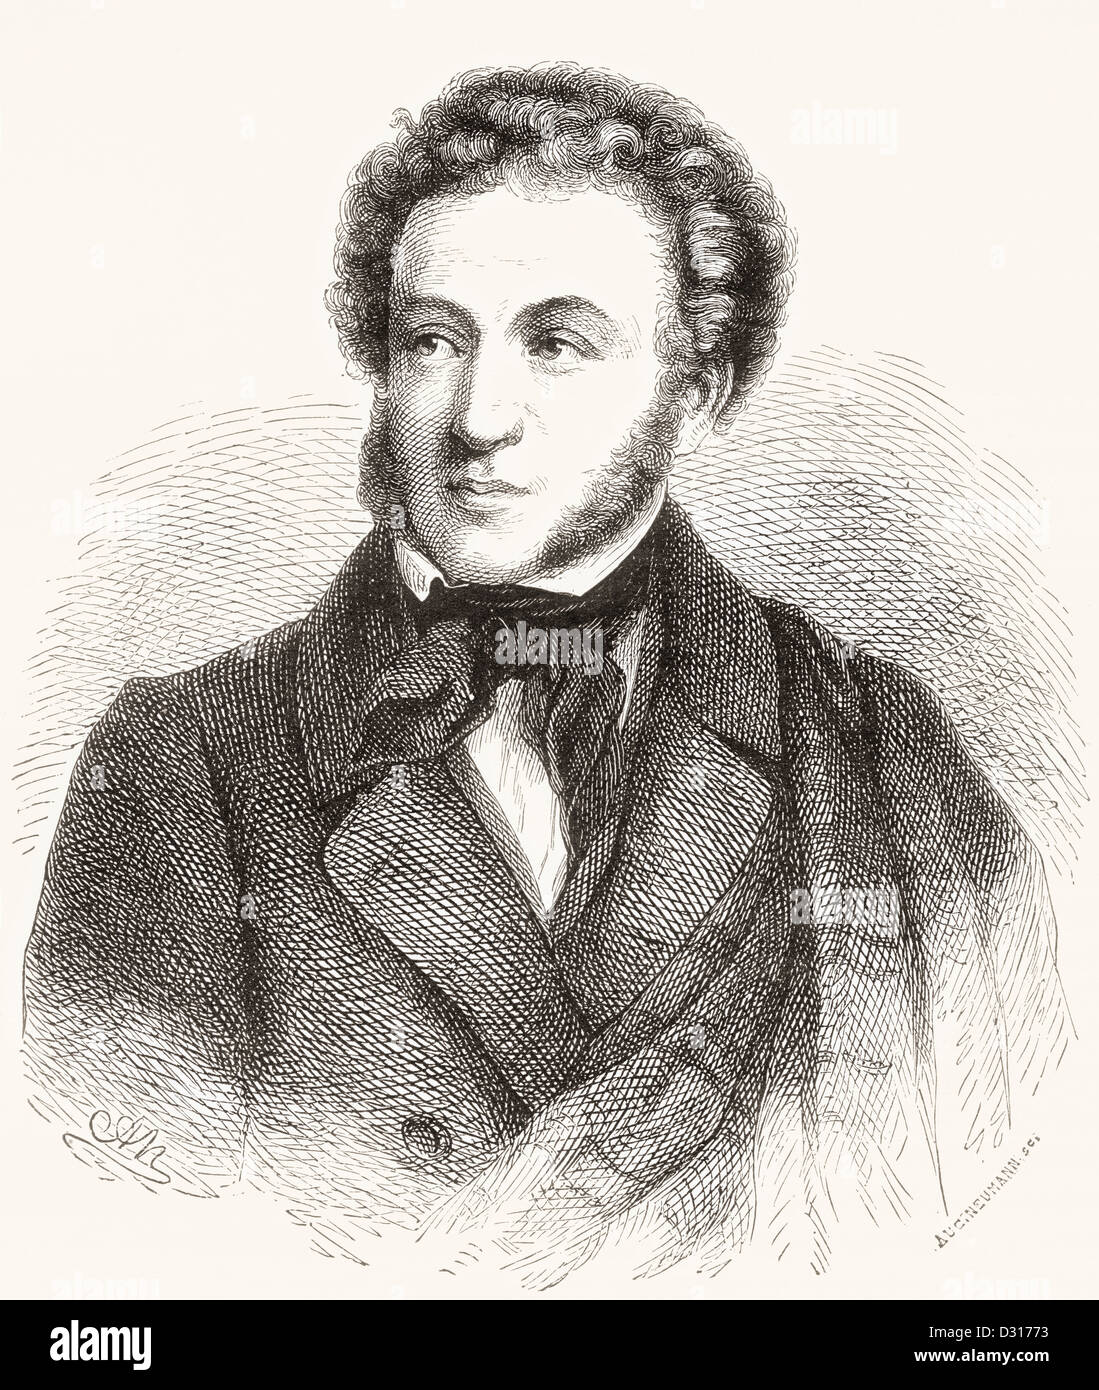 Alexandre Sergueïevitch Pouchkine, 1799 - 1837. L'auteur russe de l'époque romantique. Banque D'Images